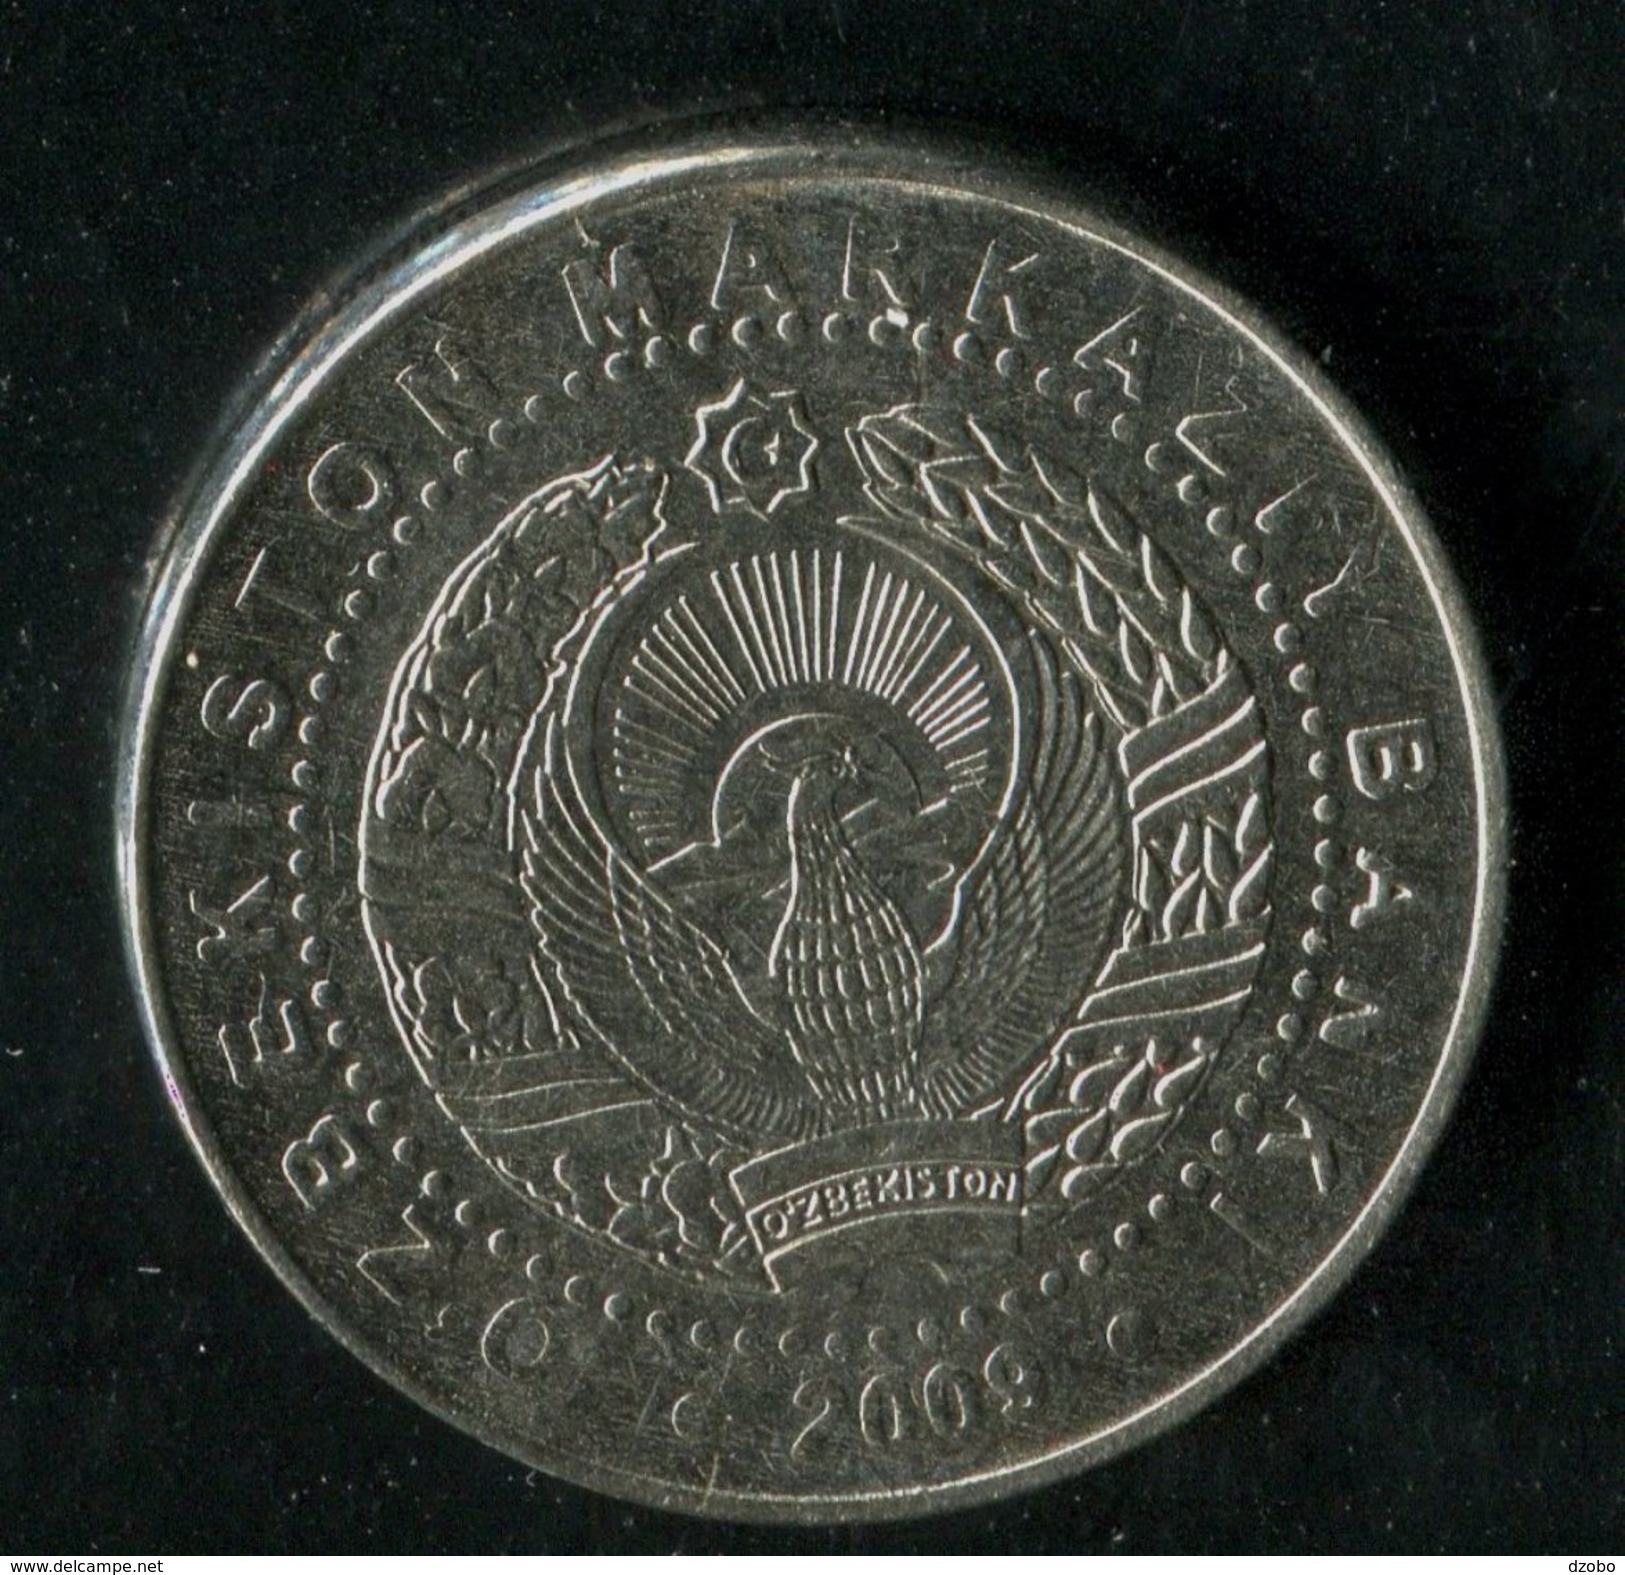 405-UZBEKISTAN-Usbekistan-Ouzbékistan-2200th Anniver. Of Tashkent, Arch Of Independence Commemorative COIN 100 So'm 2009 - Uzbenisktán